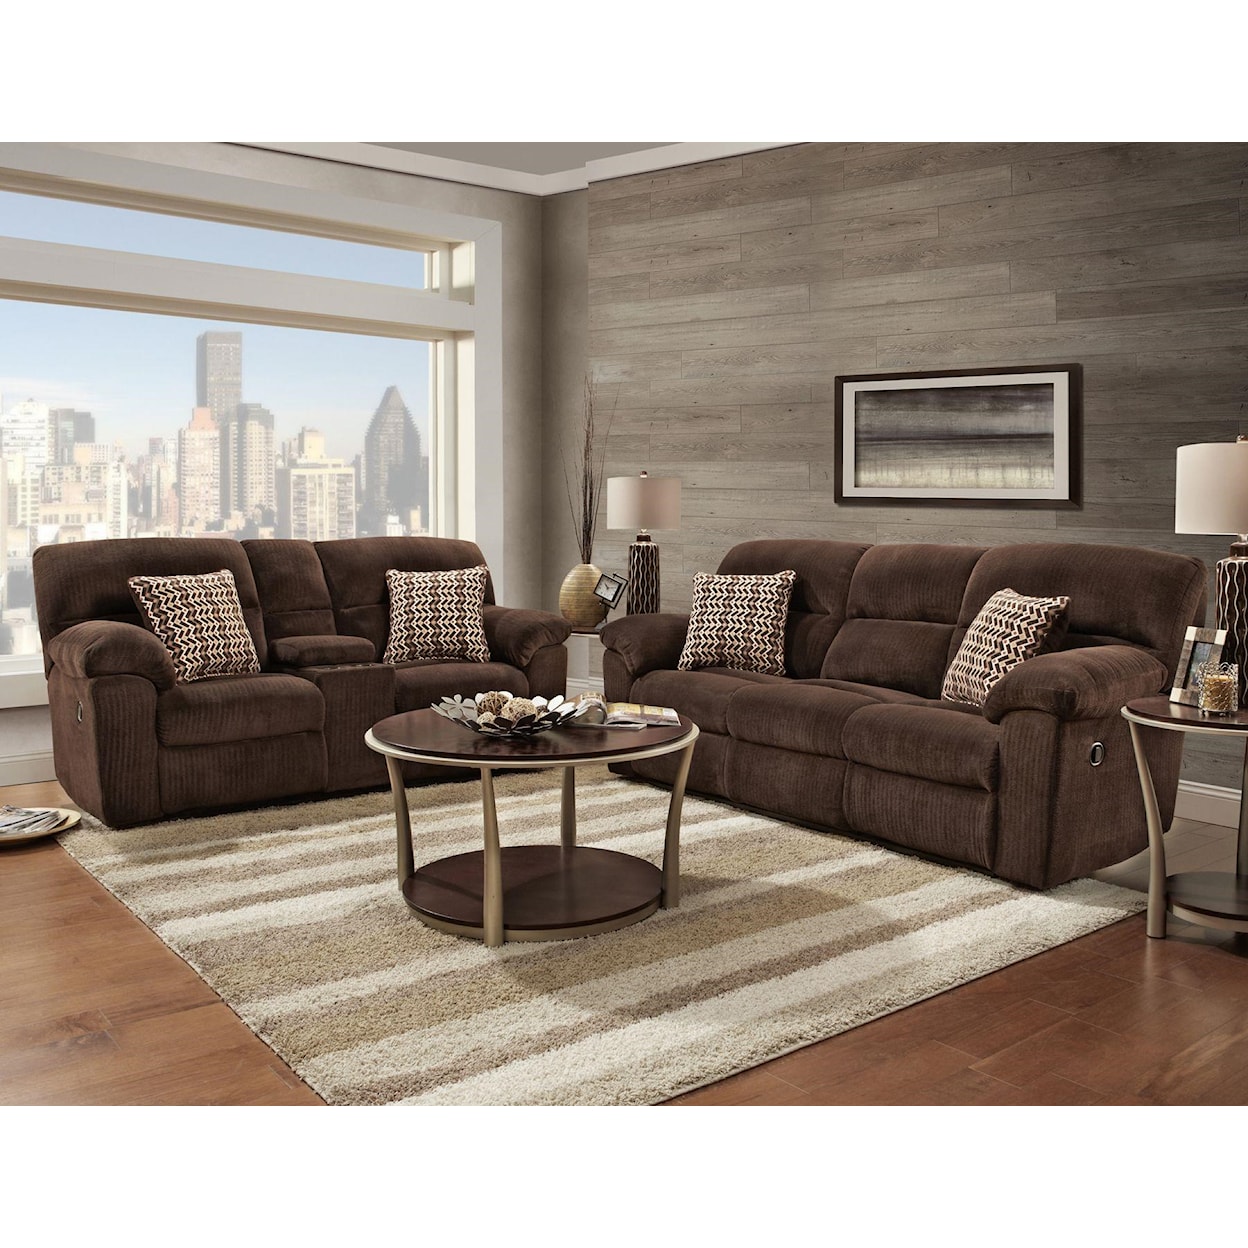 Affordable Furniture Afford MFG All 1403 Reclining Sofa